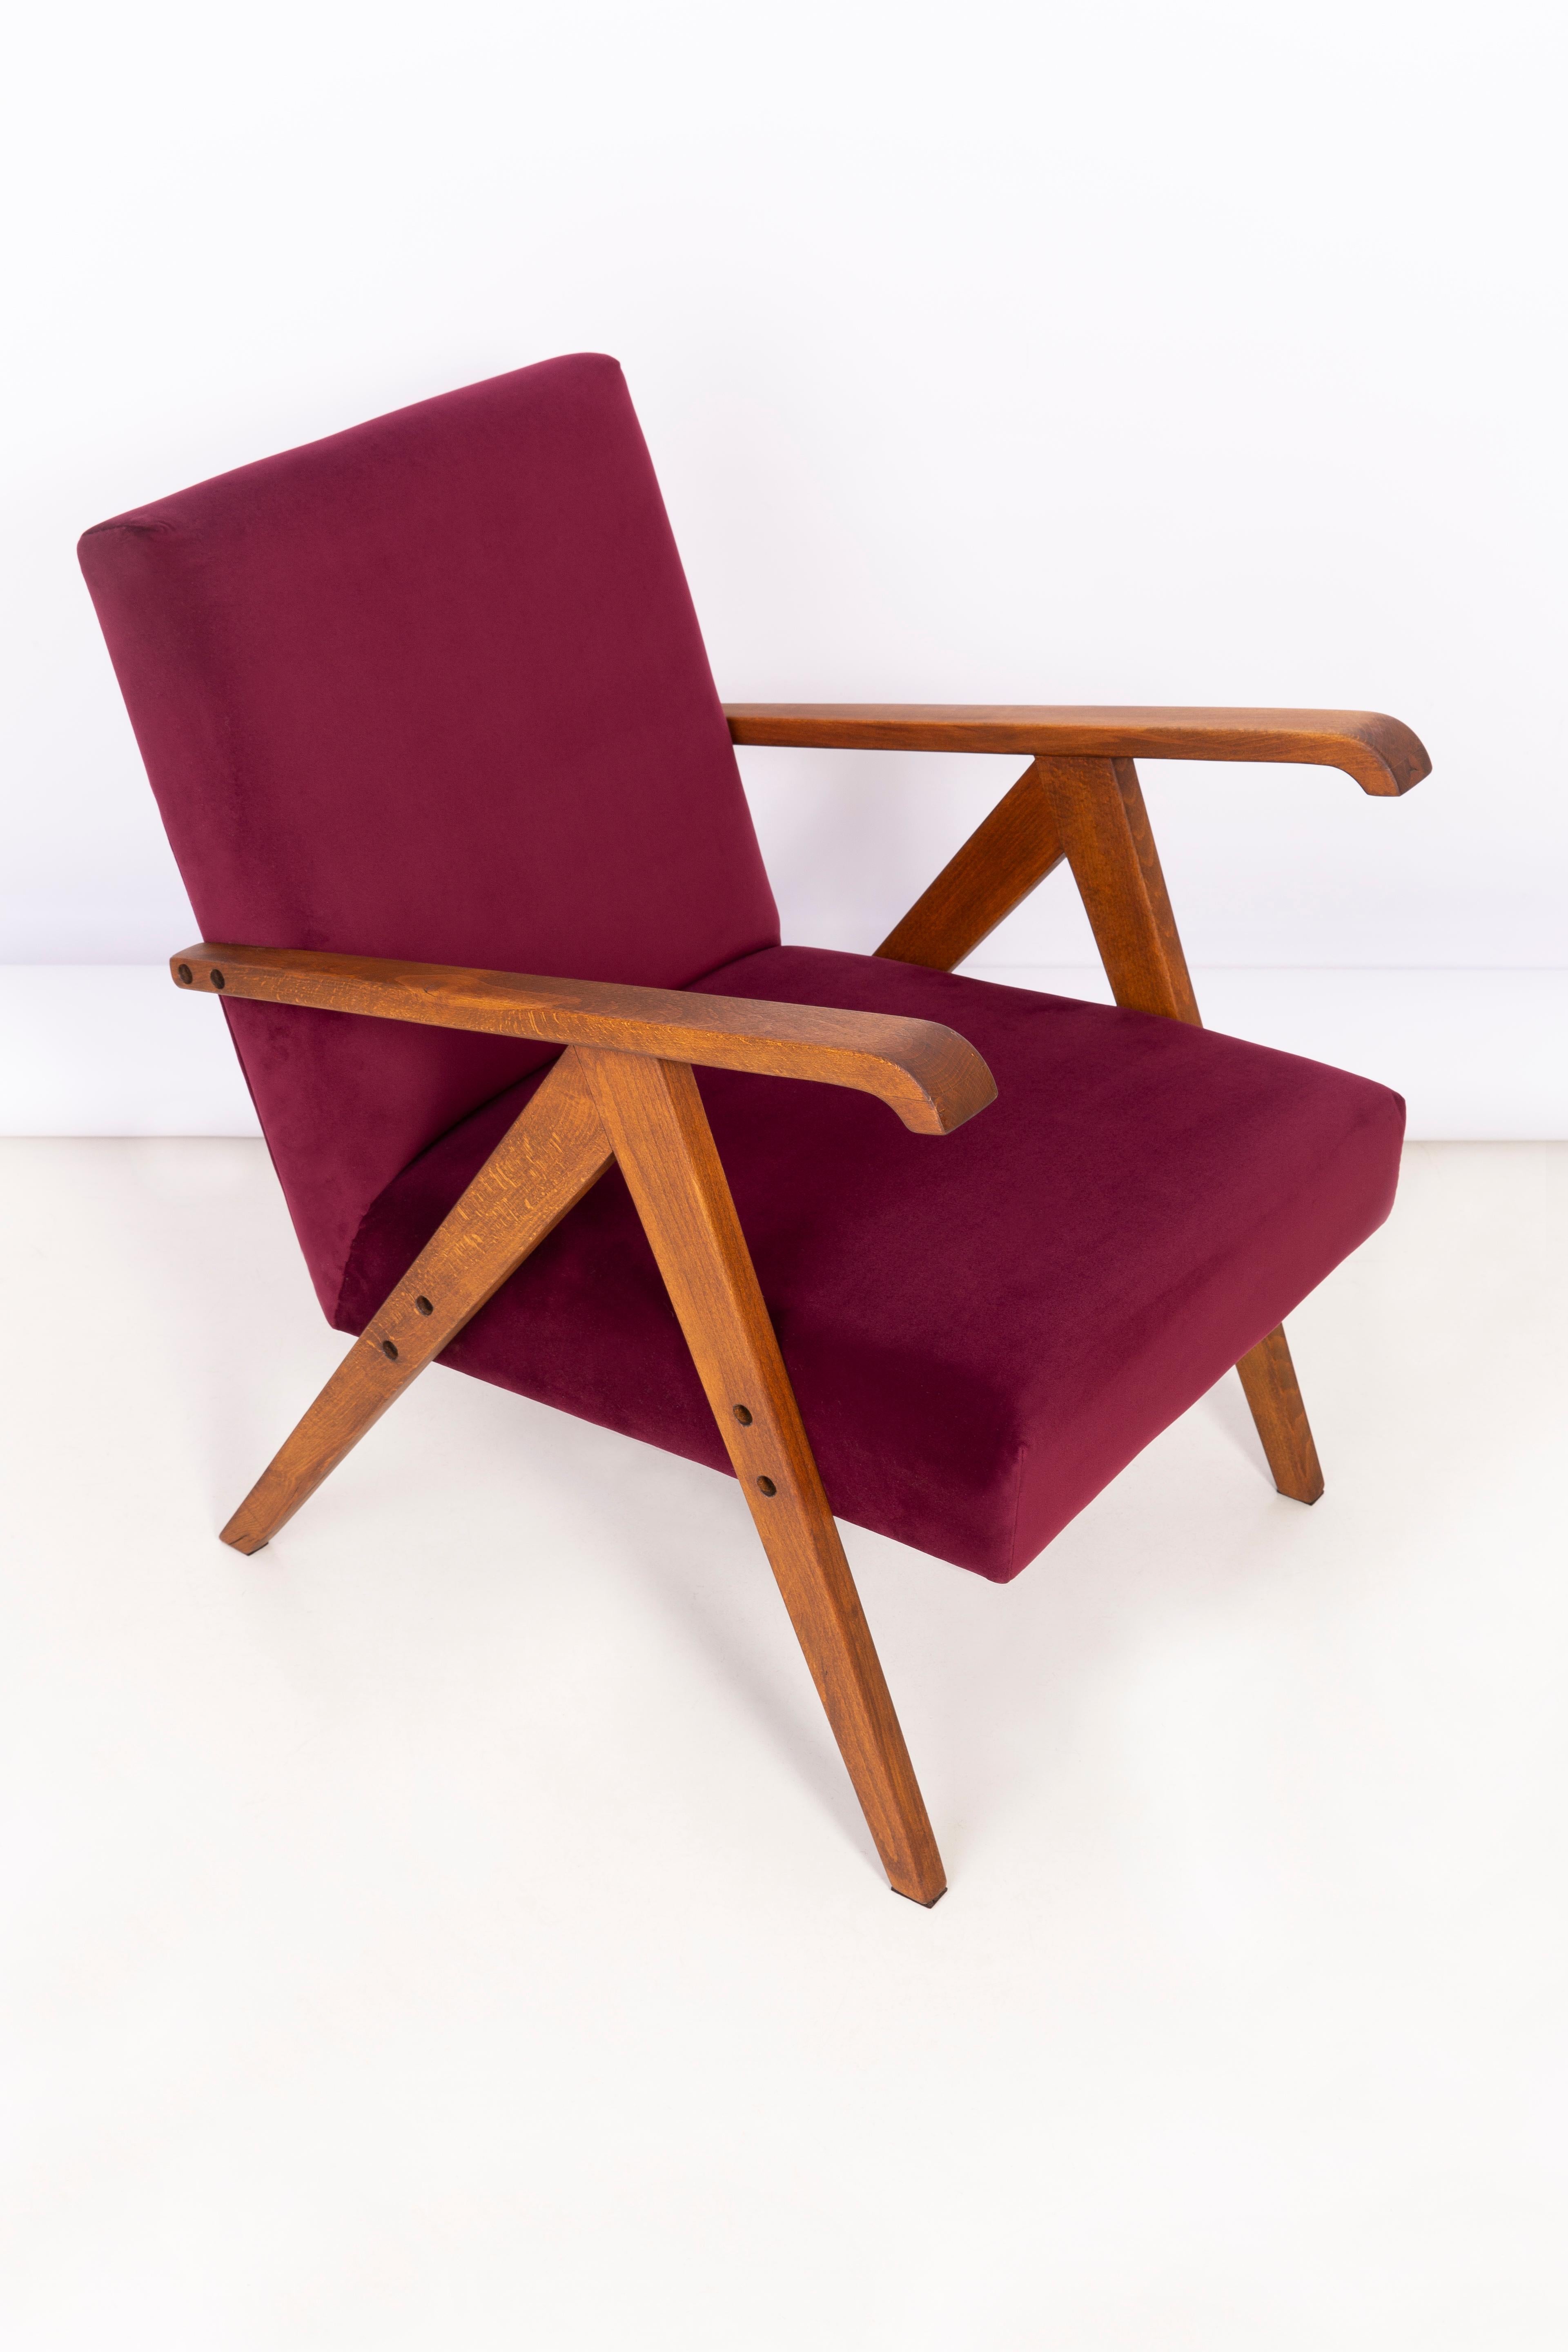 Ein schöner, restaurierter Sessel von Henryk Lis. Möbel nach kompletter Renovierung durch Schreiner und Polsterei. Der Stoff, mit dem Rückenlehne und Sitzfläche bezogen sind, ist ein hochwertiger burgunderroter Samtbezug (Farbe 2932). Der Sessel